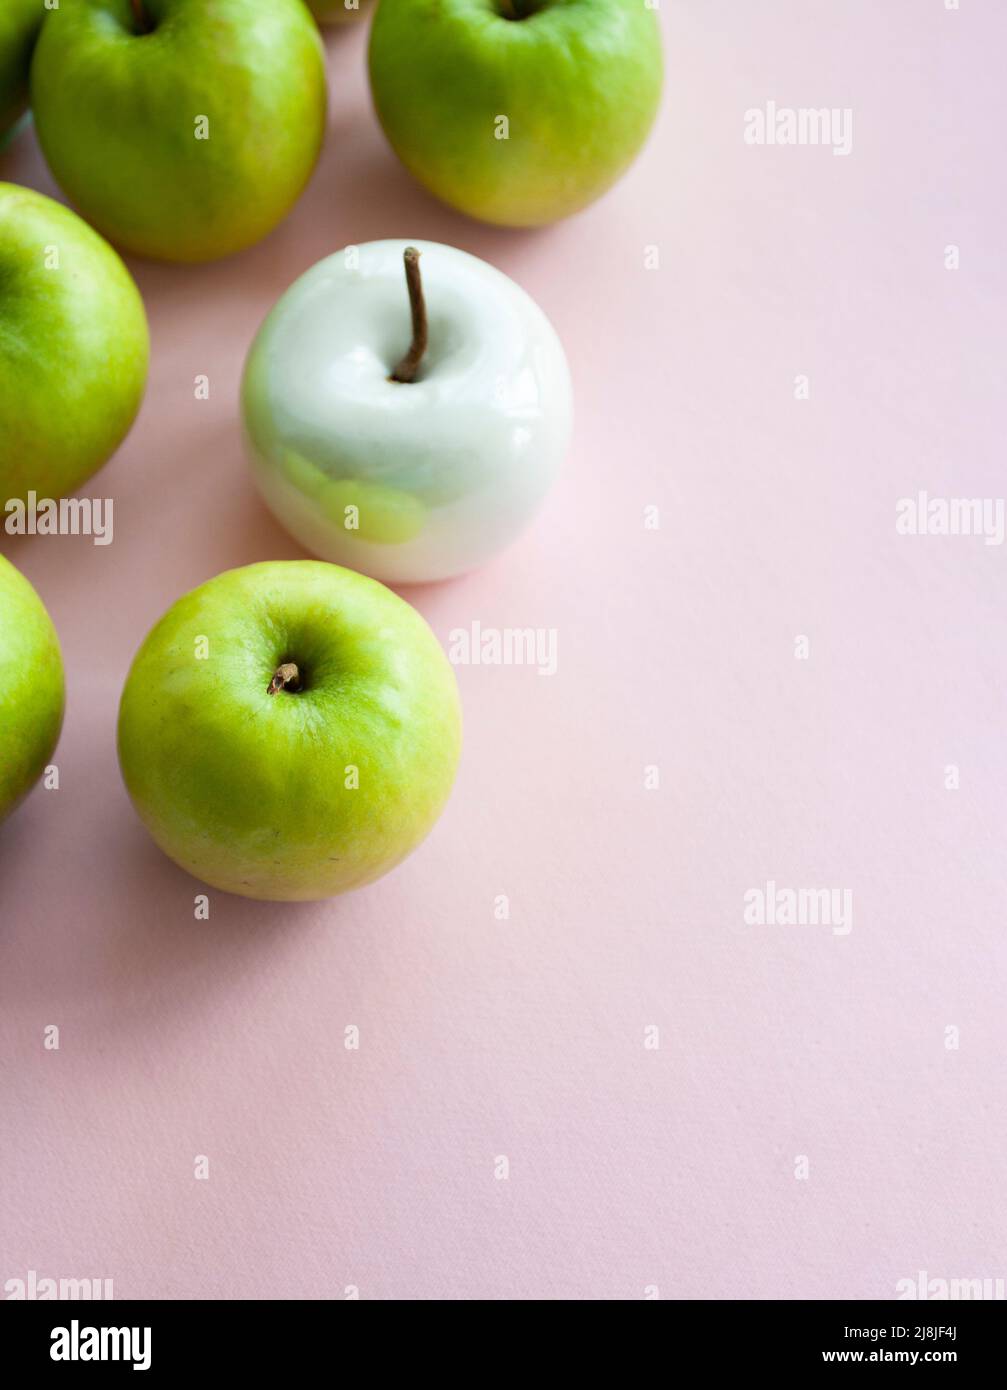 Viele leuchtend grüne Äpfel und eine weiße Keramik liegen auf einem rosa einheitlichen Hintergrund. Konzeptfoto. Stockfoto